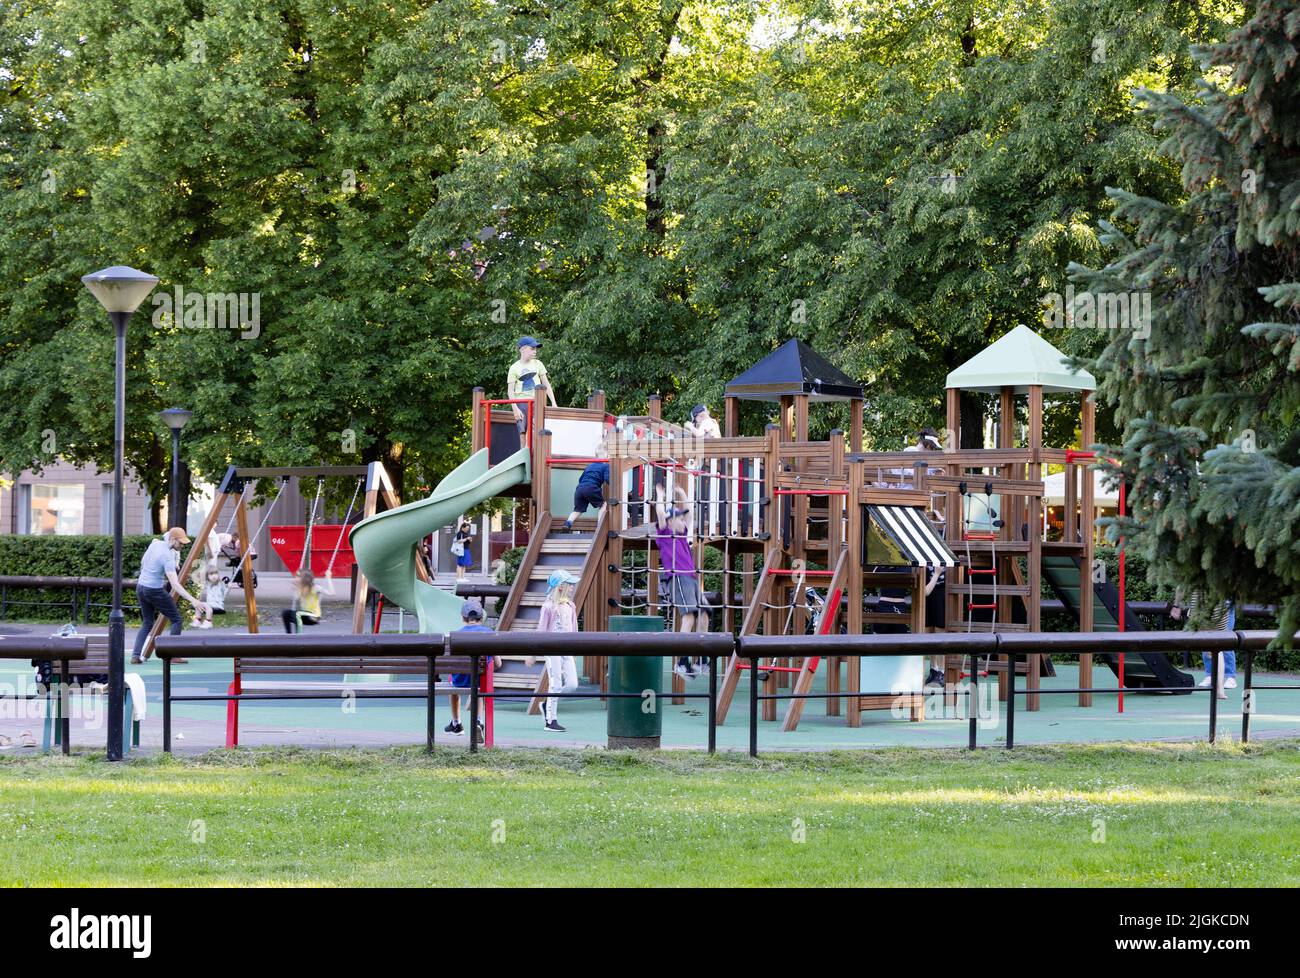 Niños de Estonia; niños pequeños de 5-10 años jugando en un parque infantil o zona de juegos, Tartu, Estonia, Europa Foto de stock